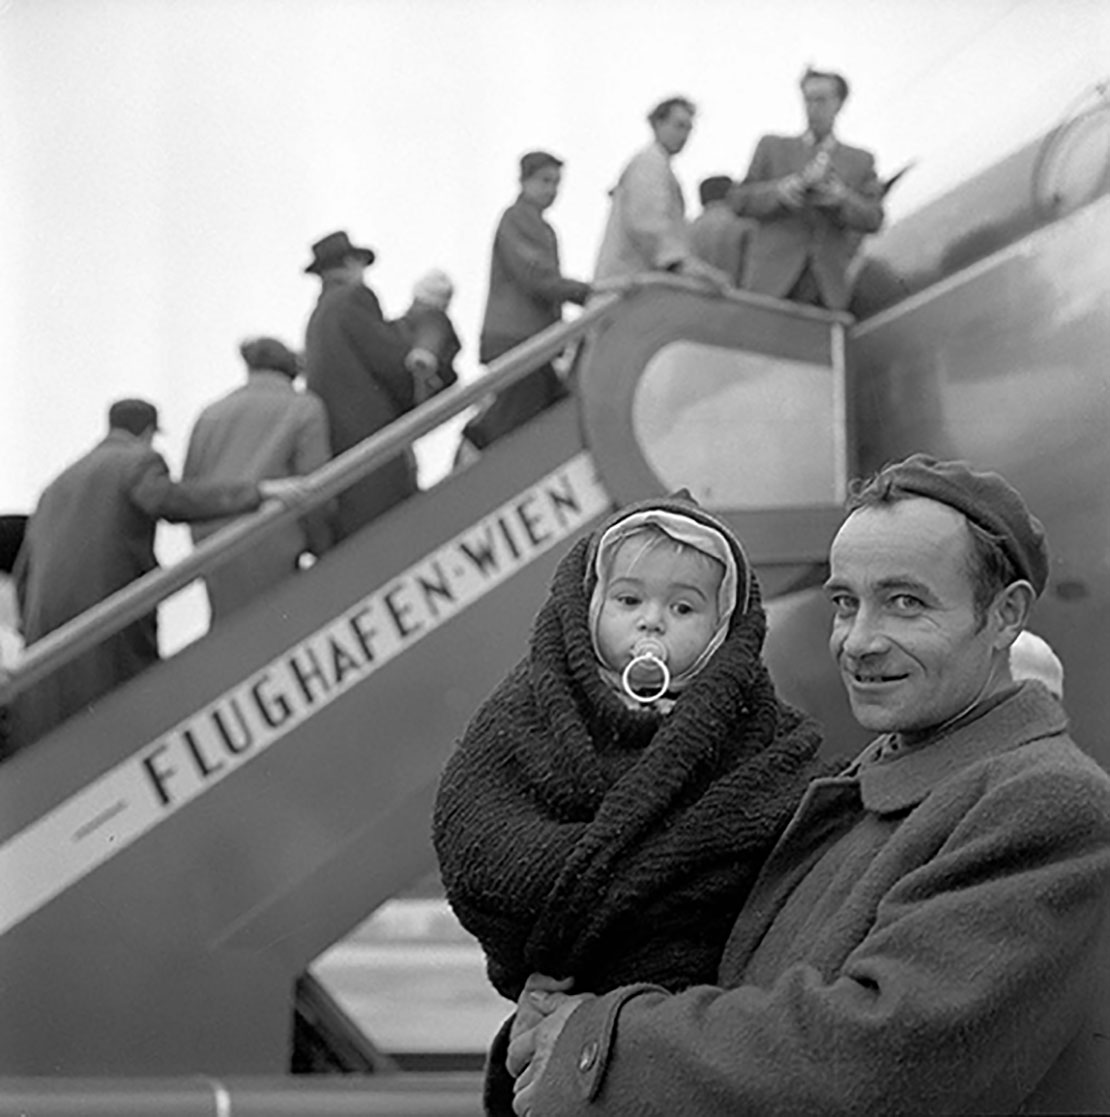 Ungarischer Flüchtling mit seinem Kind kurz vor dem Flug in die USA, Flughafen Wien, 1956/57. (c) Barbara Pflaum / Imagno / picturedesk.com 